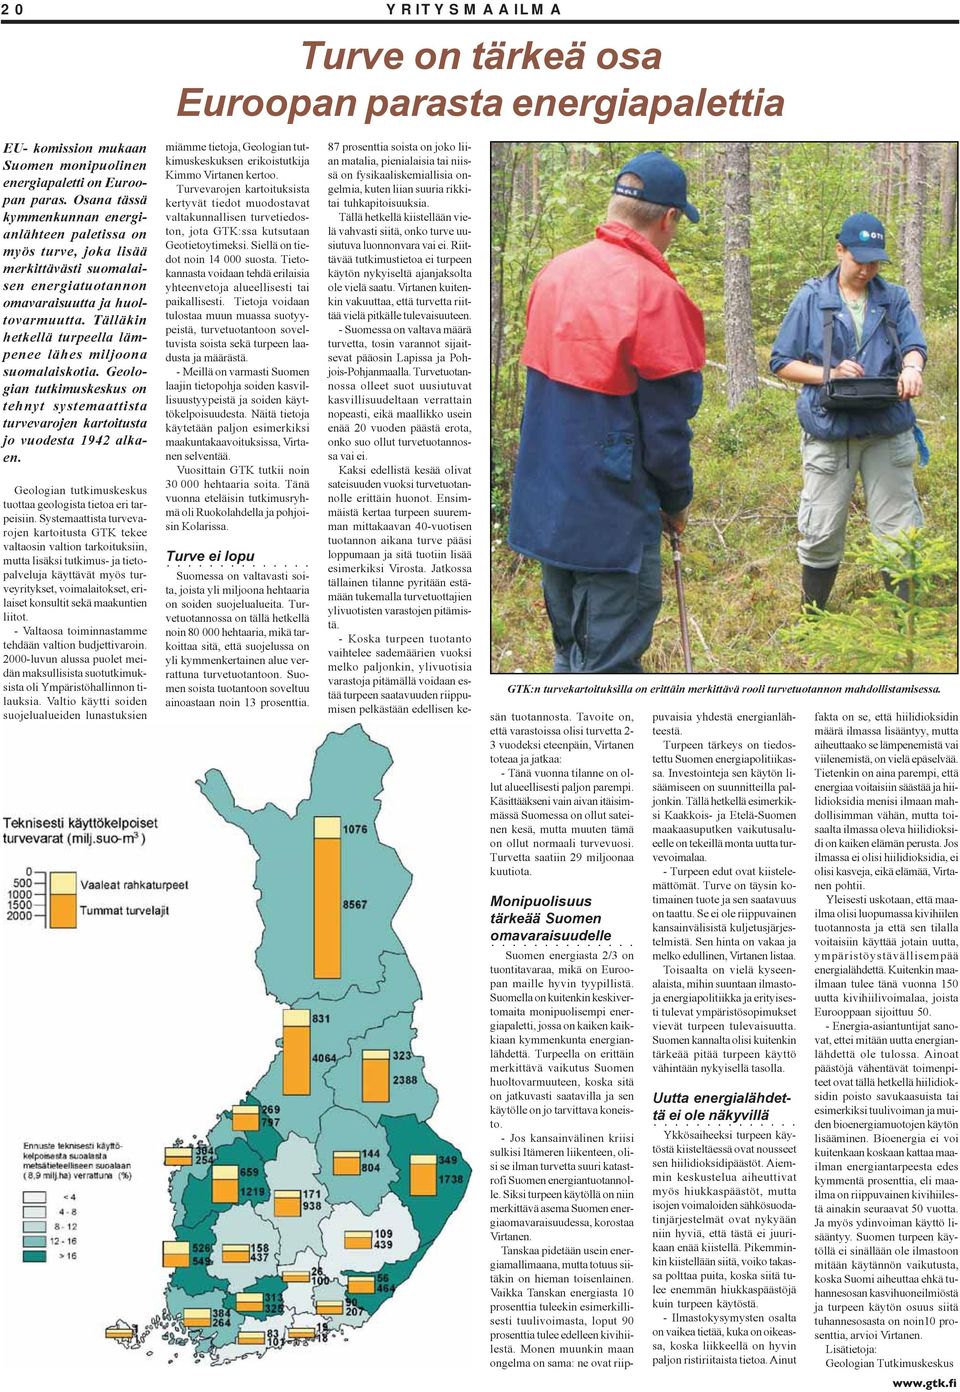 Tälläkin hetkellä turpeella lämpenee lähes miljoona suomalaiskotia. Geologian tutkimuskeskus on tehnyt systemaattista turvevarojen kartoitusta jo vuodesta 1942 alkaen.